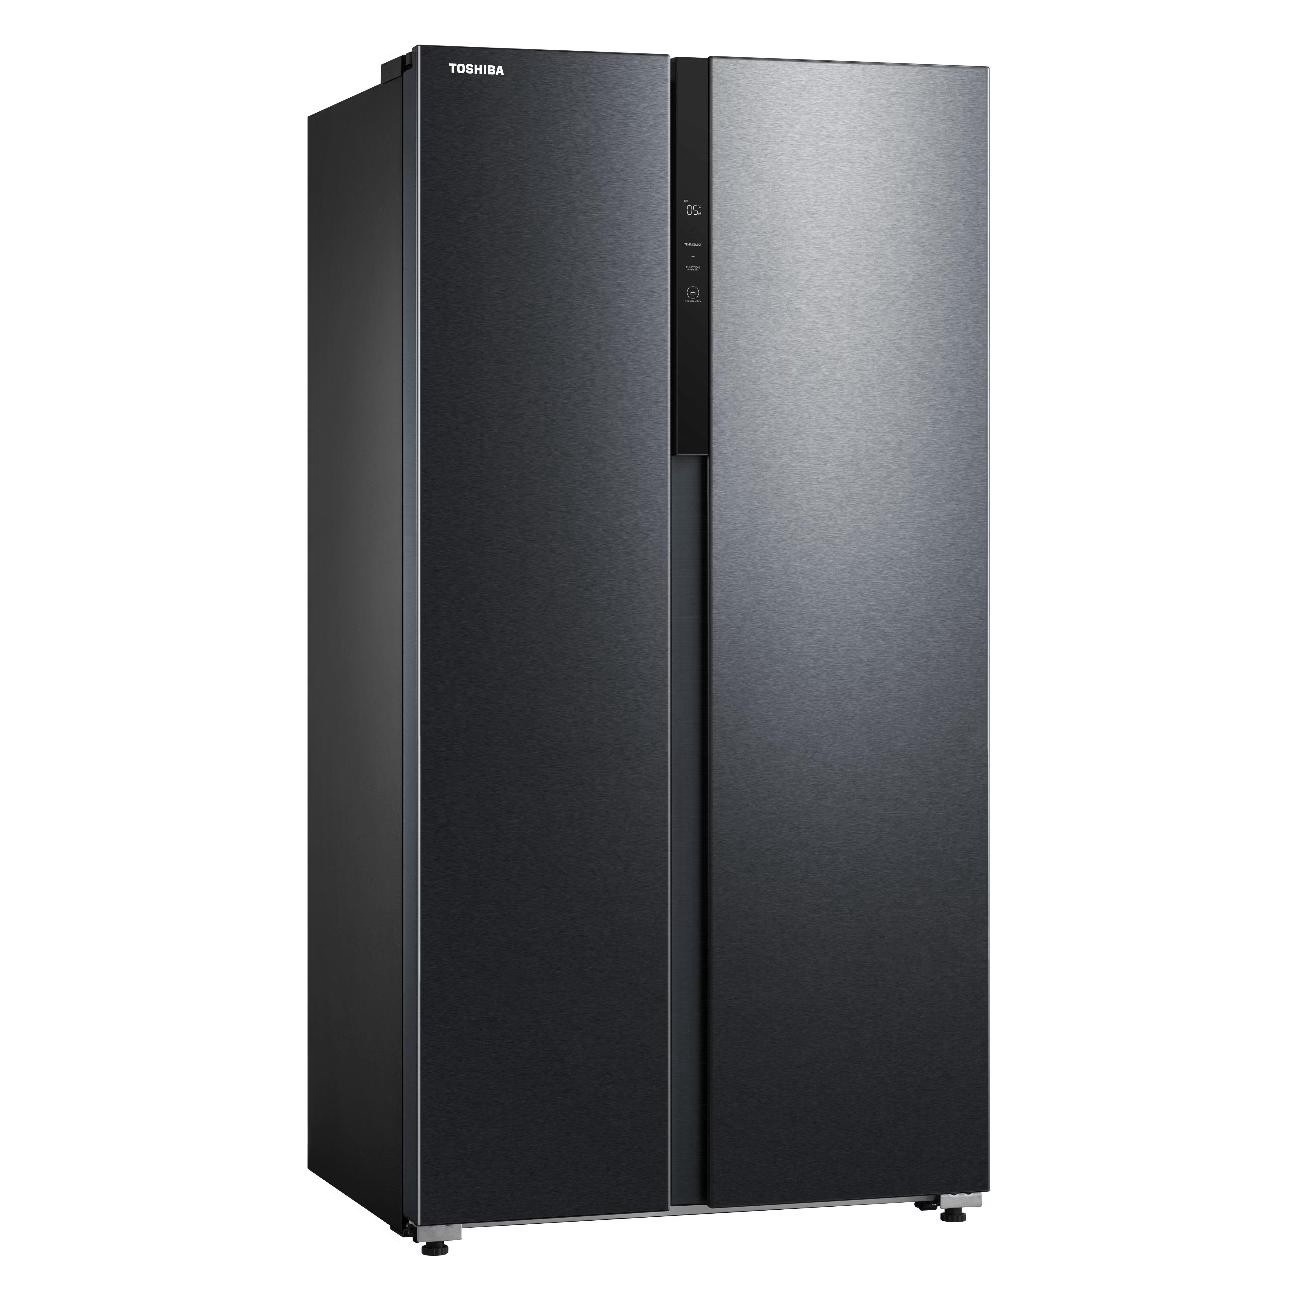 Холодильник Toshiba GR-RS780WI-PMJ(05) черный холодильник toshiba gr rb449we pmj 49 серебристый